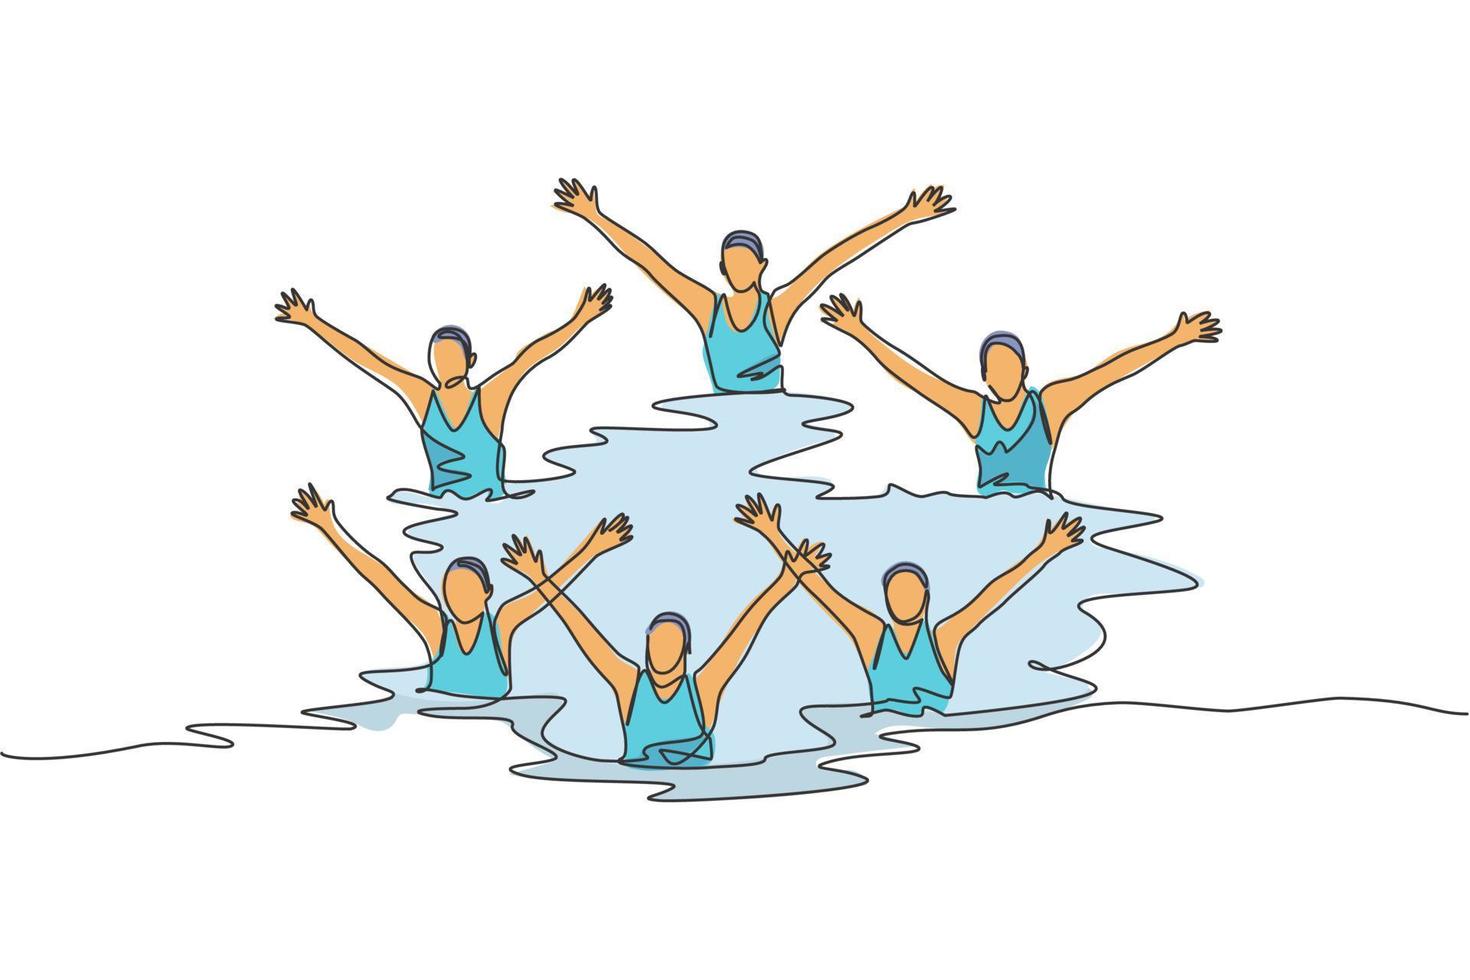 1 solteiro linha desenhando do jovem beleza mulheres nadador realizando sincronizado rotina do elaborar movimentos dentro a água vetor ilustração. equipe água esporte evento conceito. moderno contínuo linha desenhar